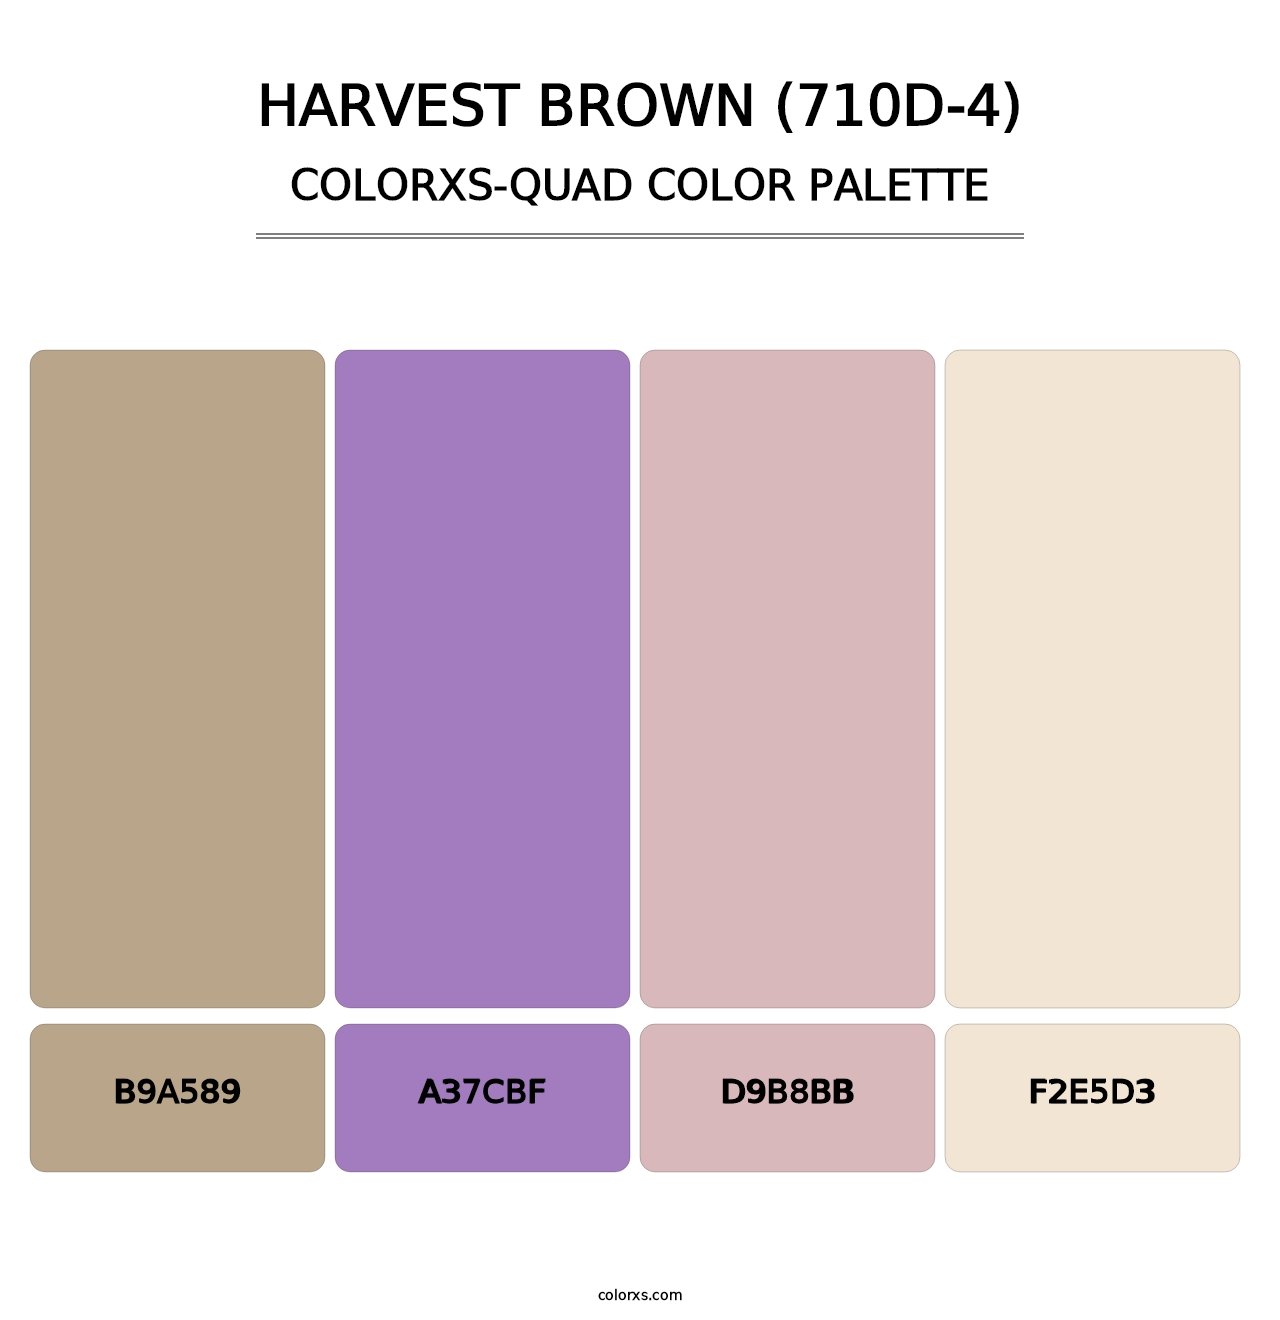 Harvest Brown (710D-4) - Colorxs Quad Palette